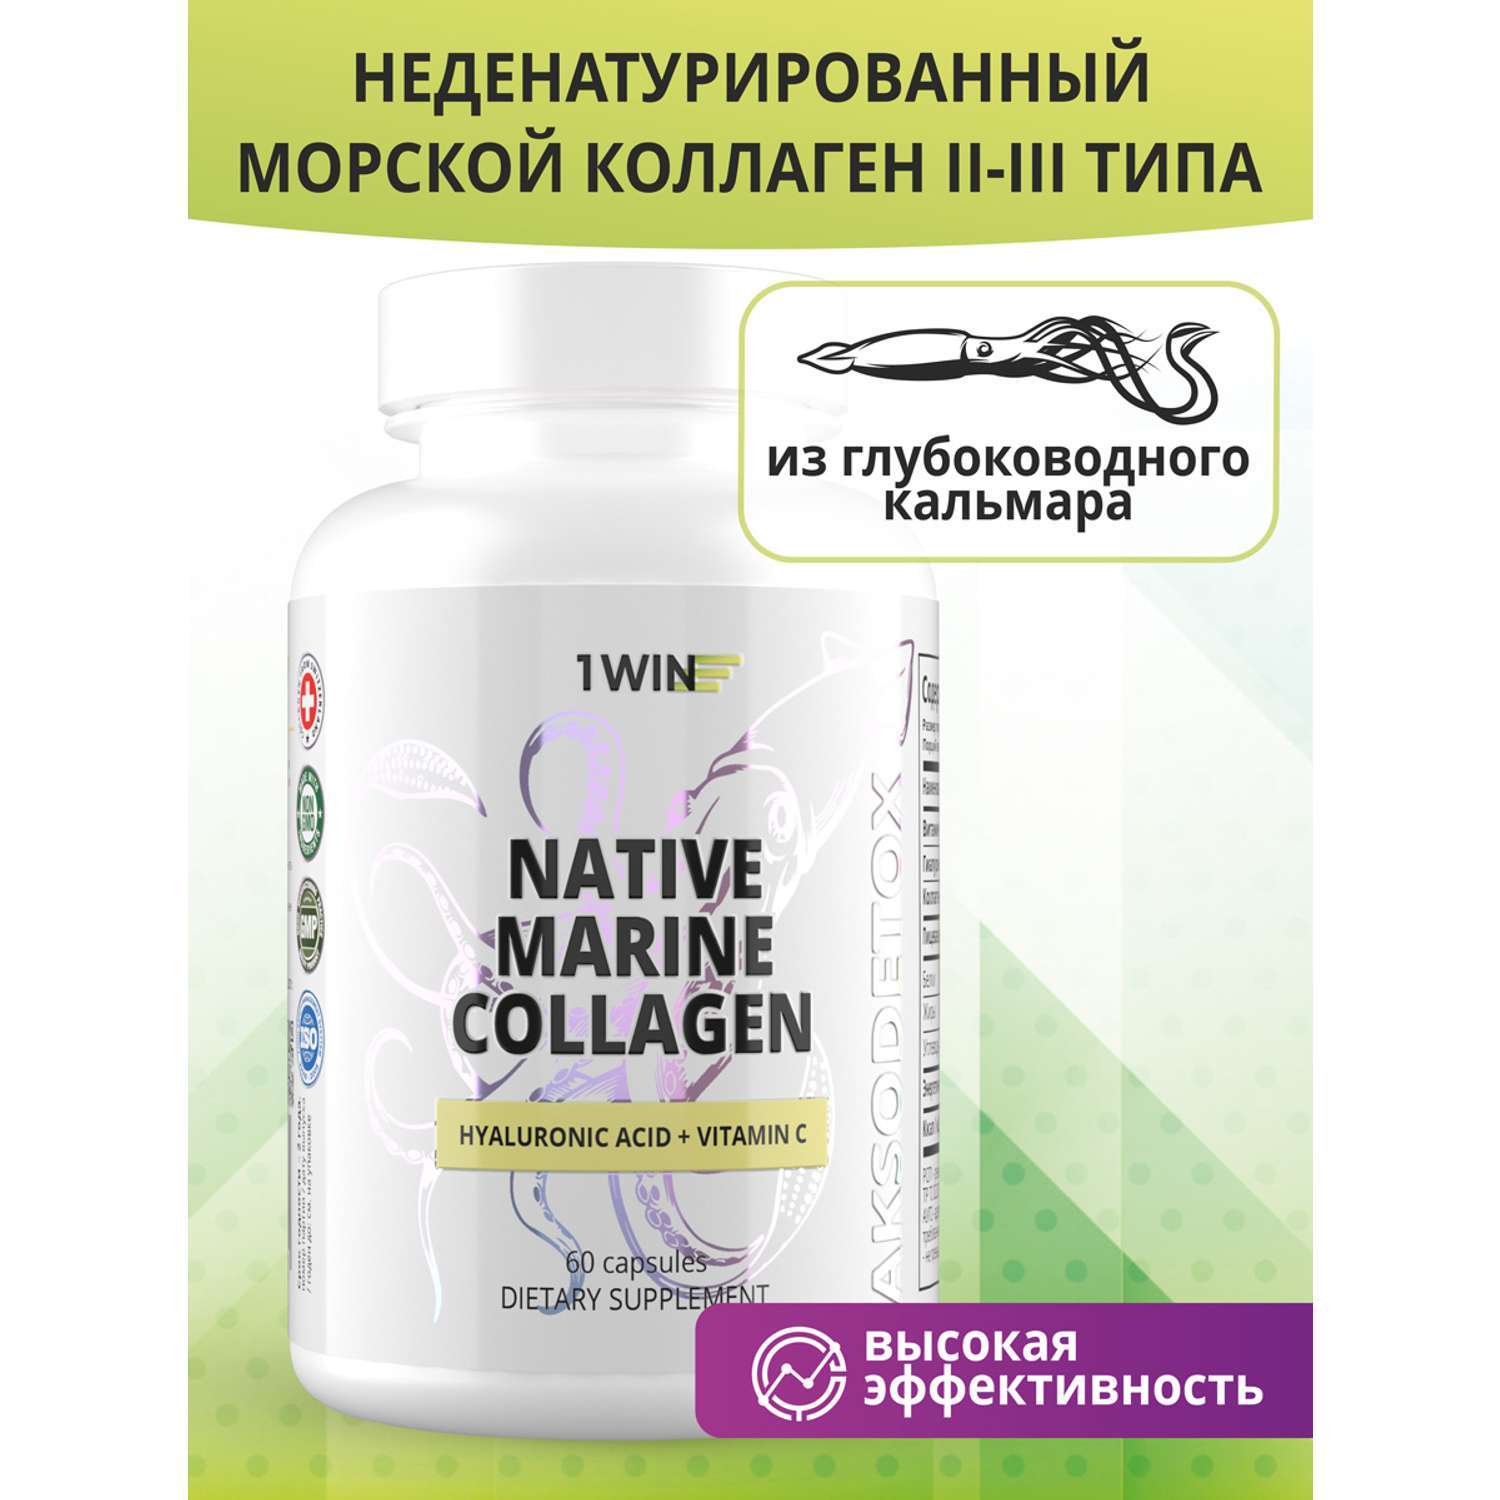 Коллаген 1WIN Нативный Морской + Гиалуроновая кислота + Витамин С / 60 капсул - фото 2